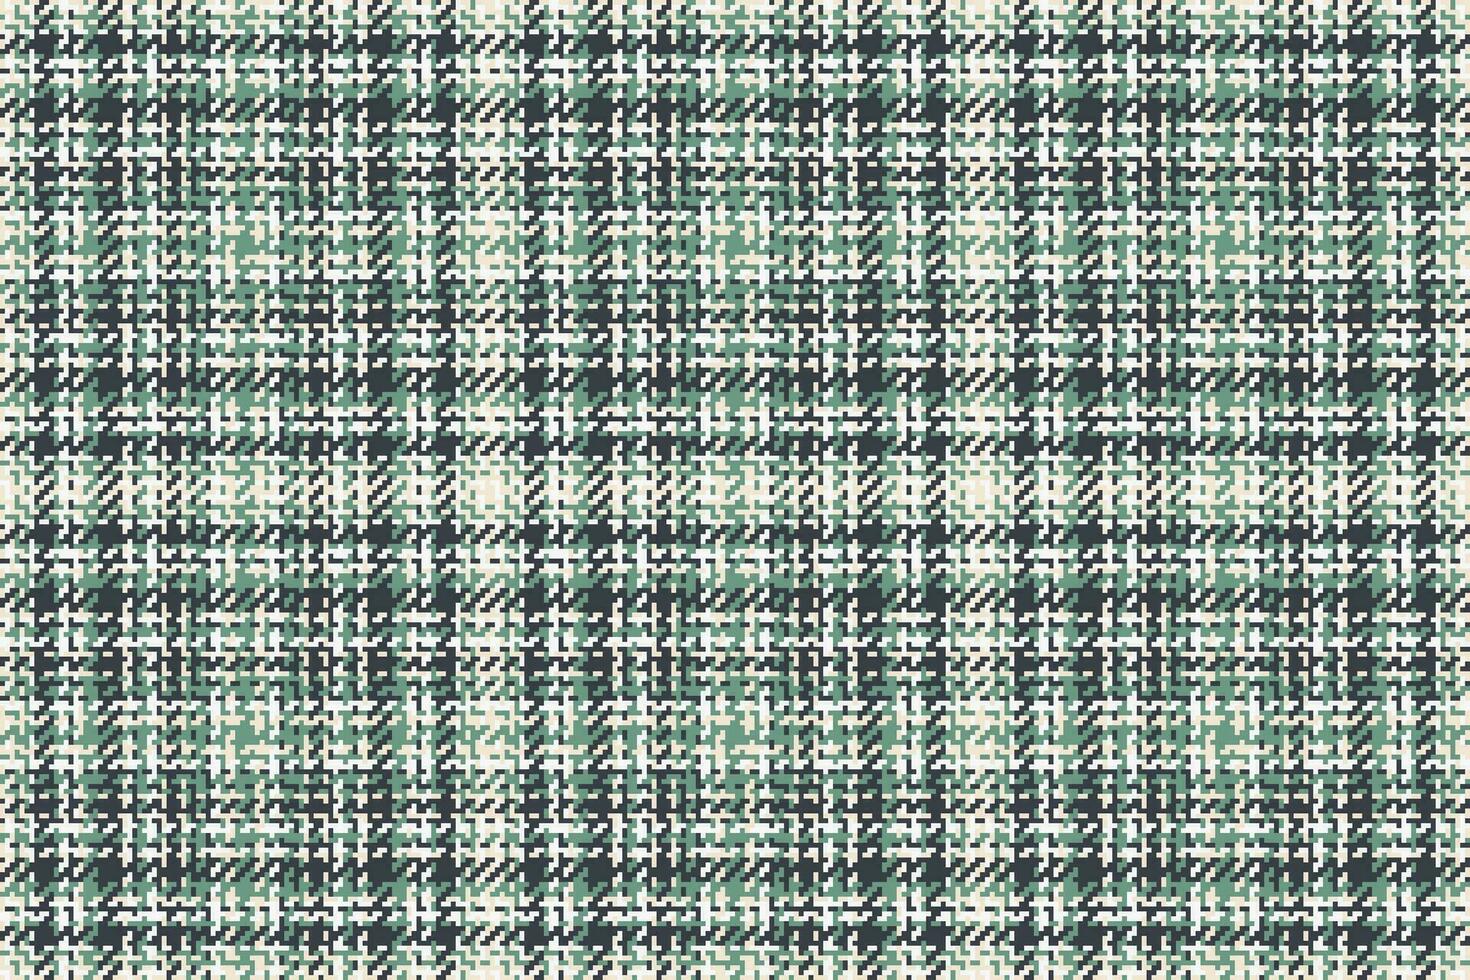 patroon textiel plaid van Schotse ruit achtergrond vector met een naadloos controleren structuur kleding stof.